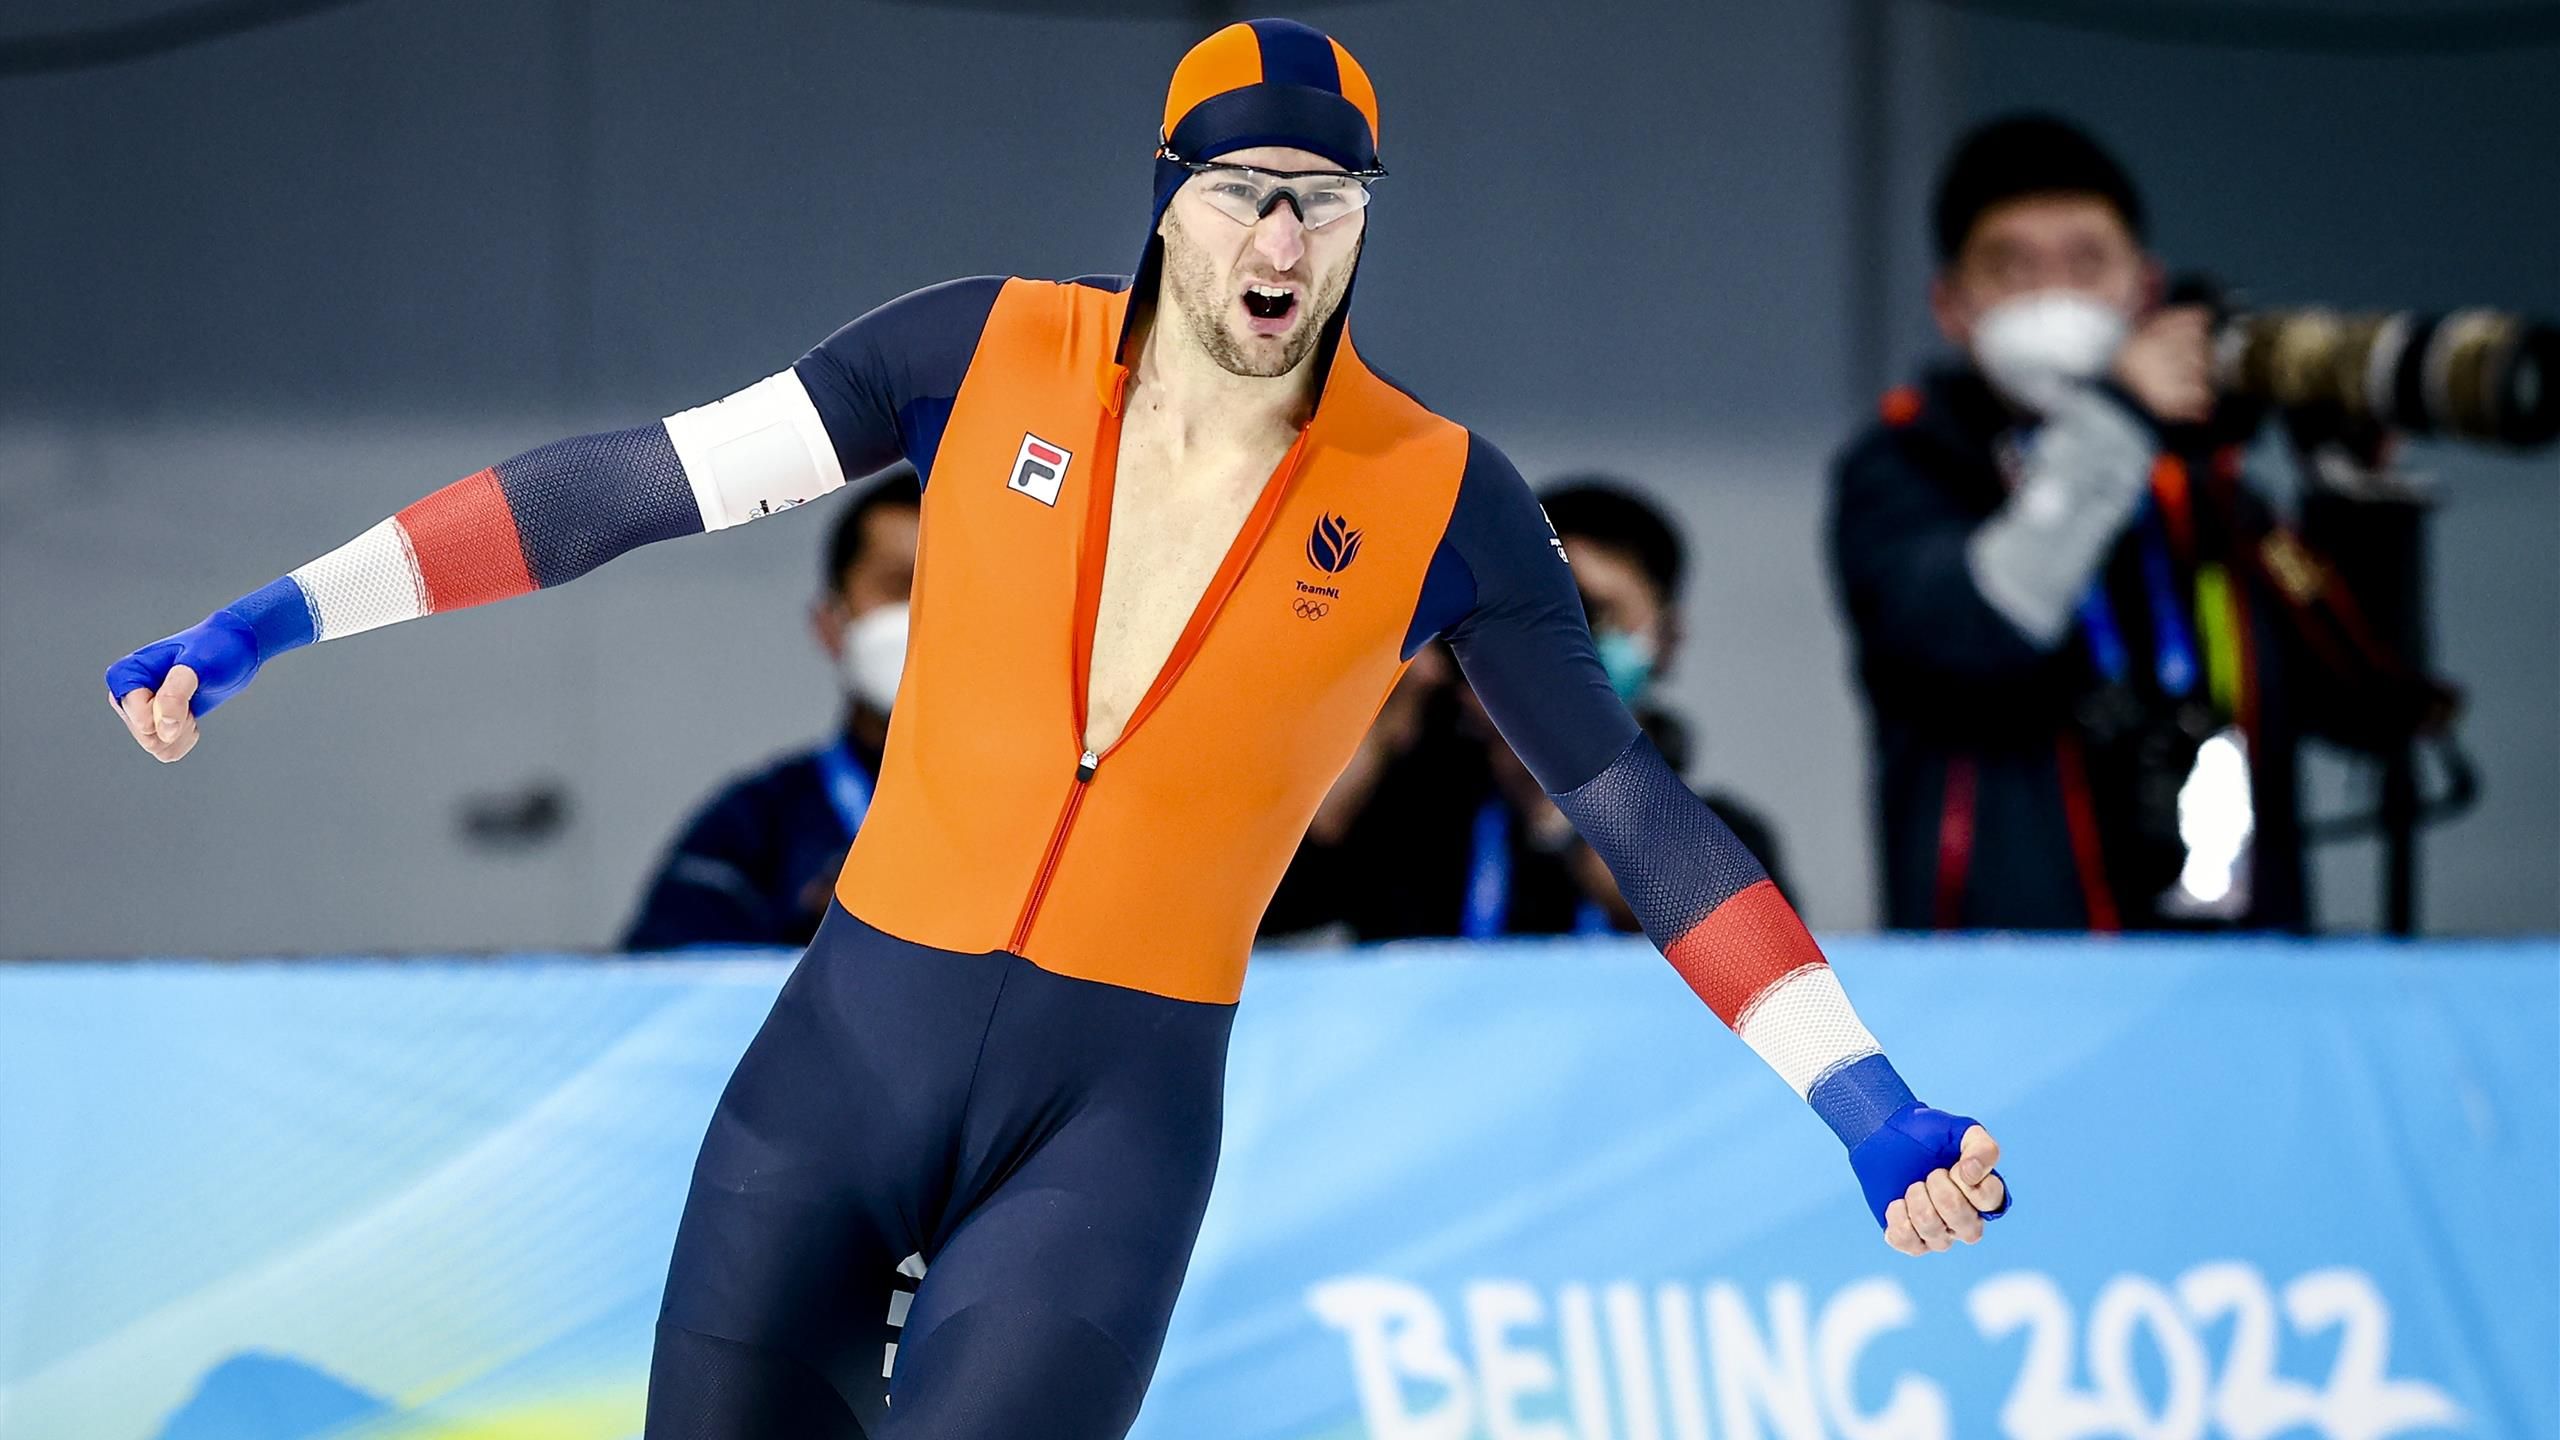 mate toevoegen Hechting Beijing 2022 | Live - Goud voor Krol op de 1000 meter, Verbij laat lopen en  Otterspeer stelt teleur - Eurosport